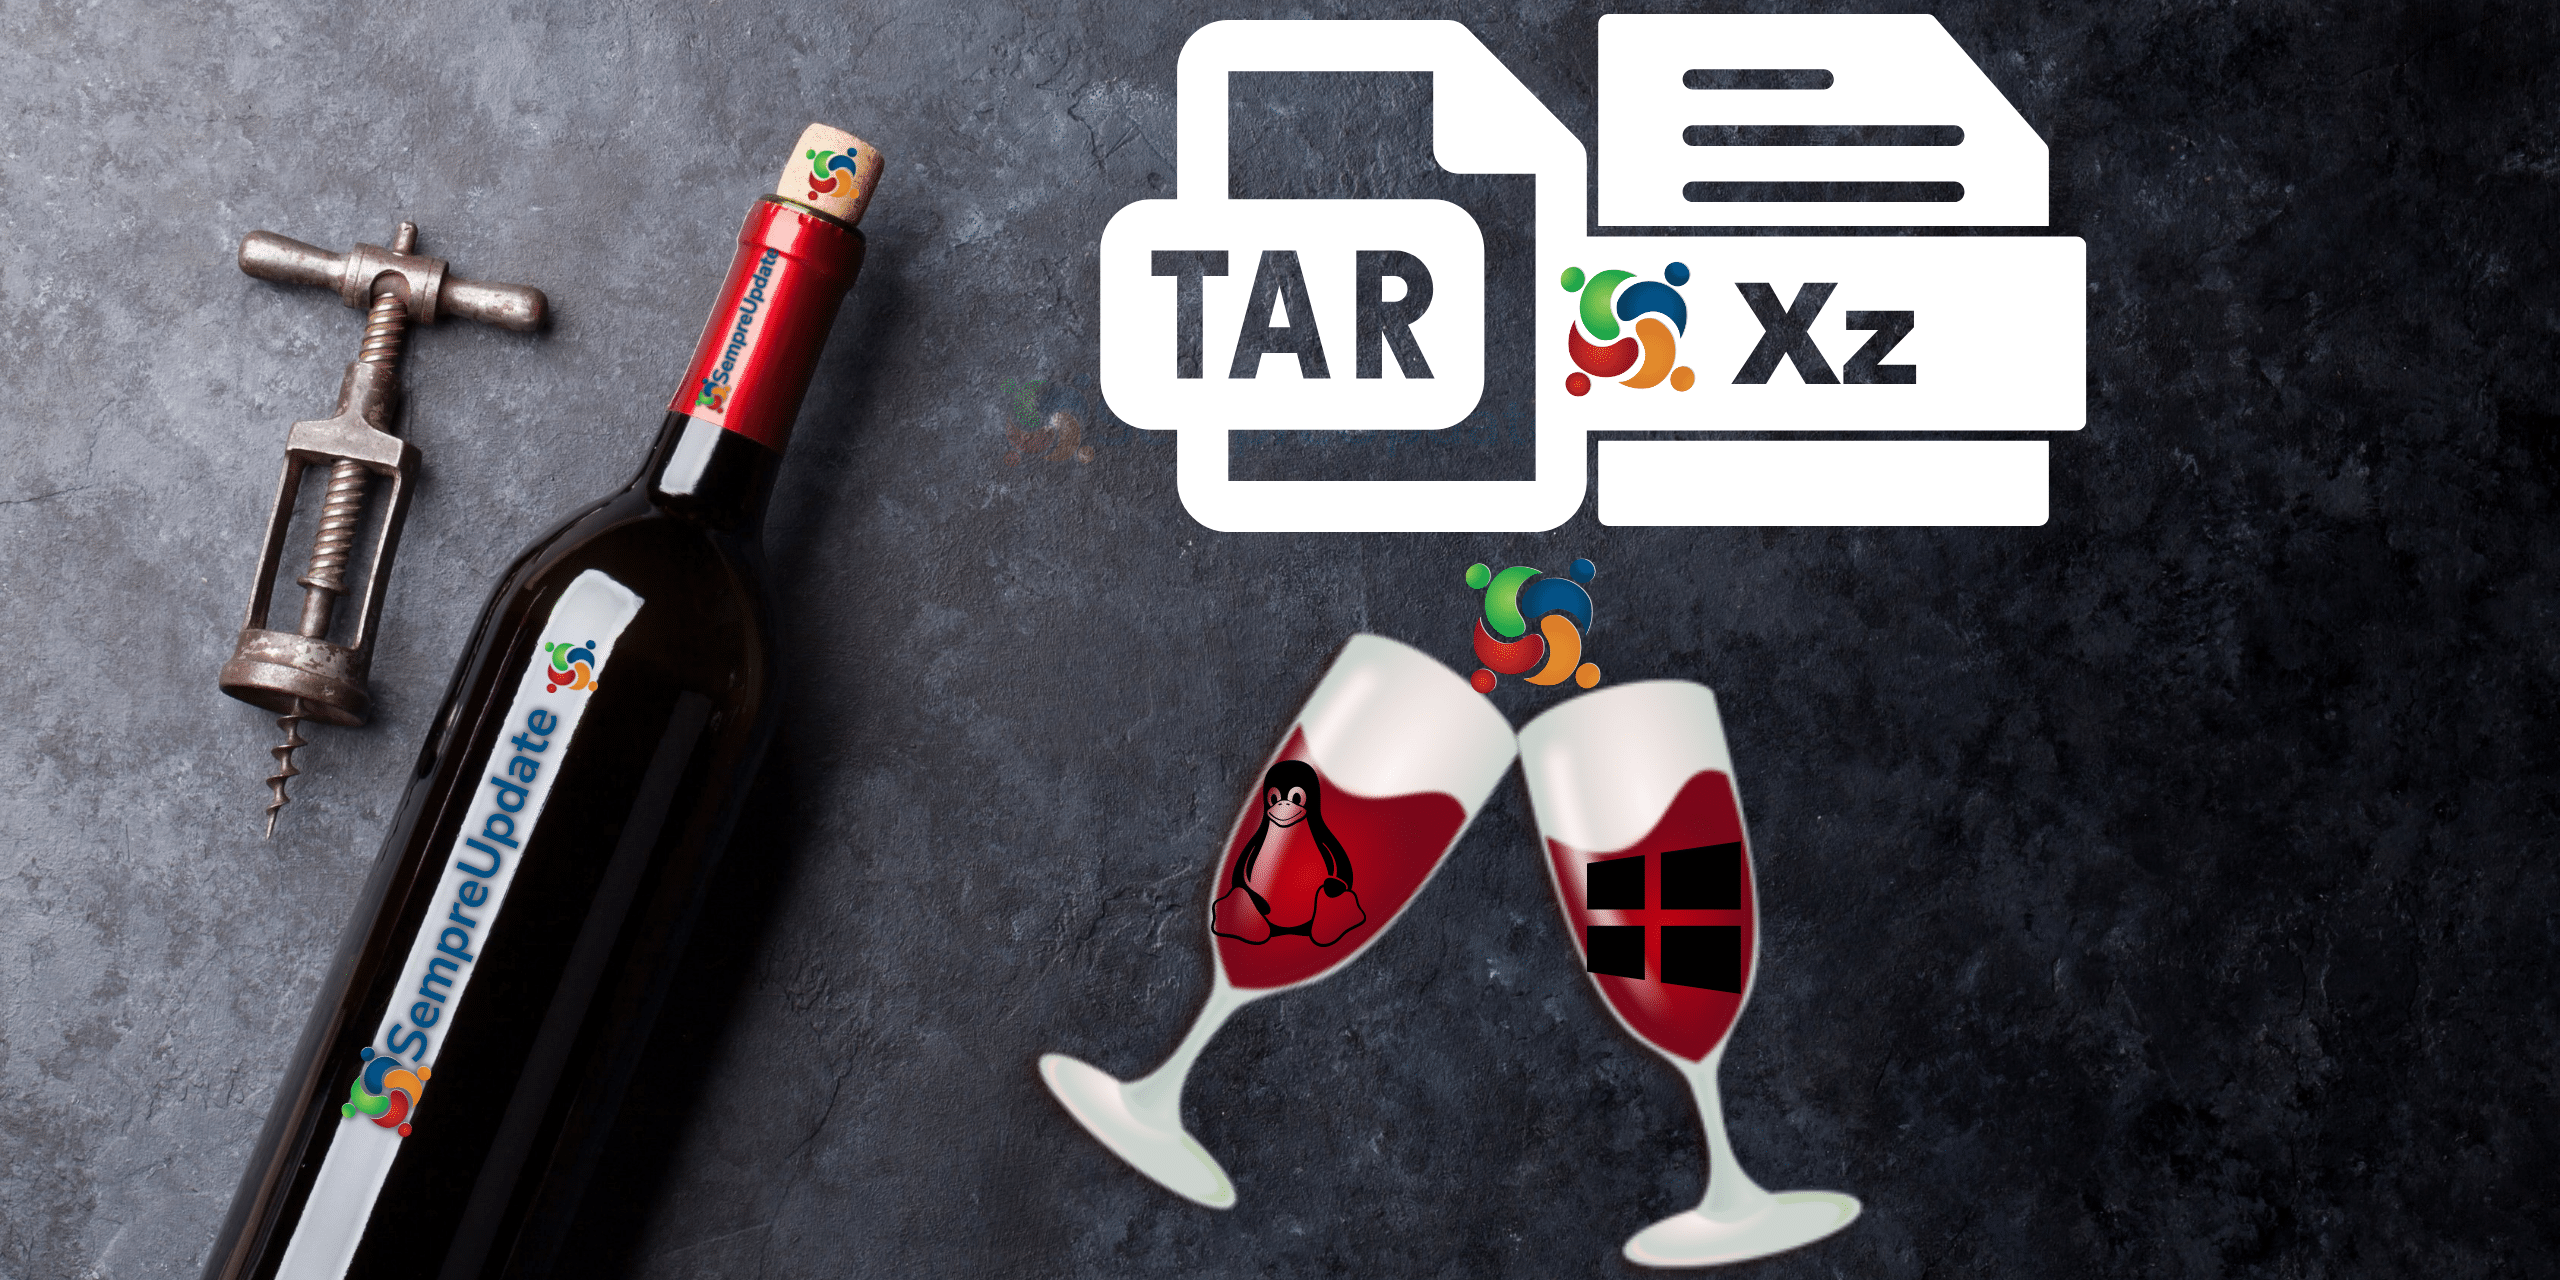 Como instalar o Wine 7.0 tar.xz no Linux